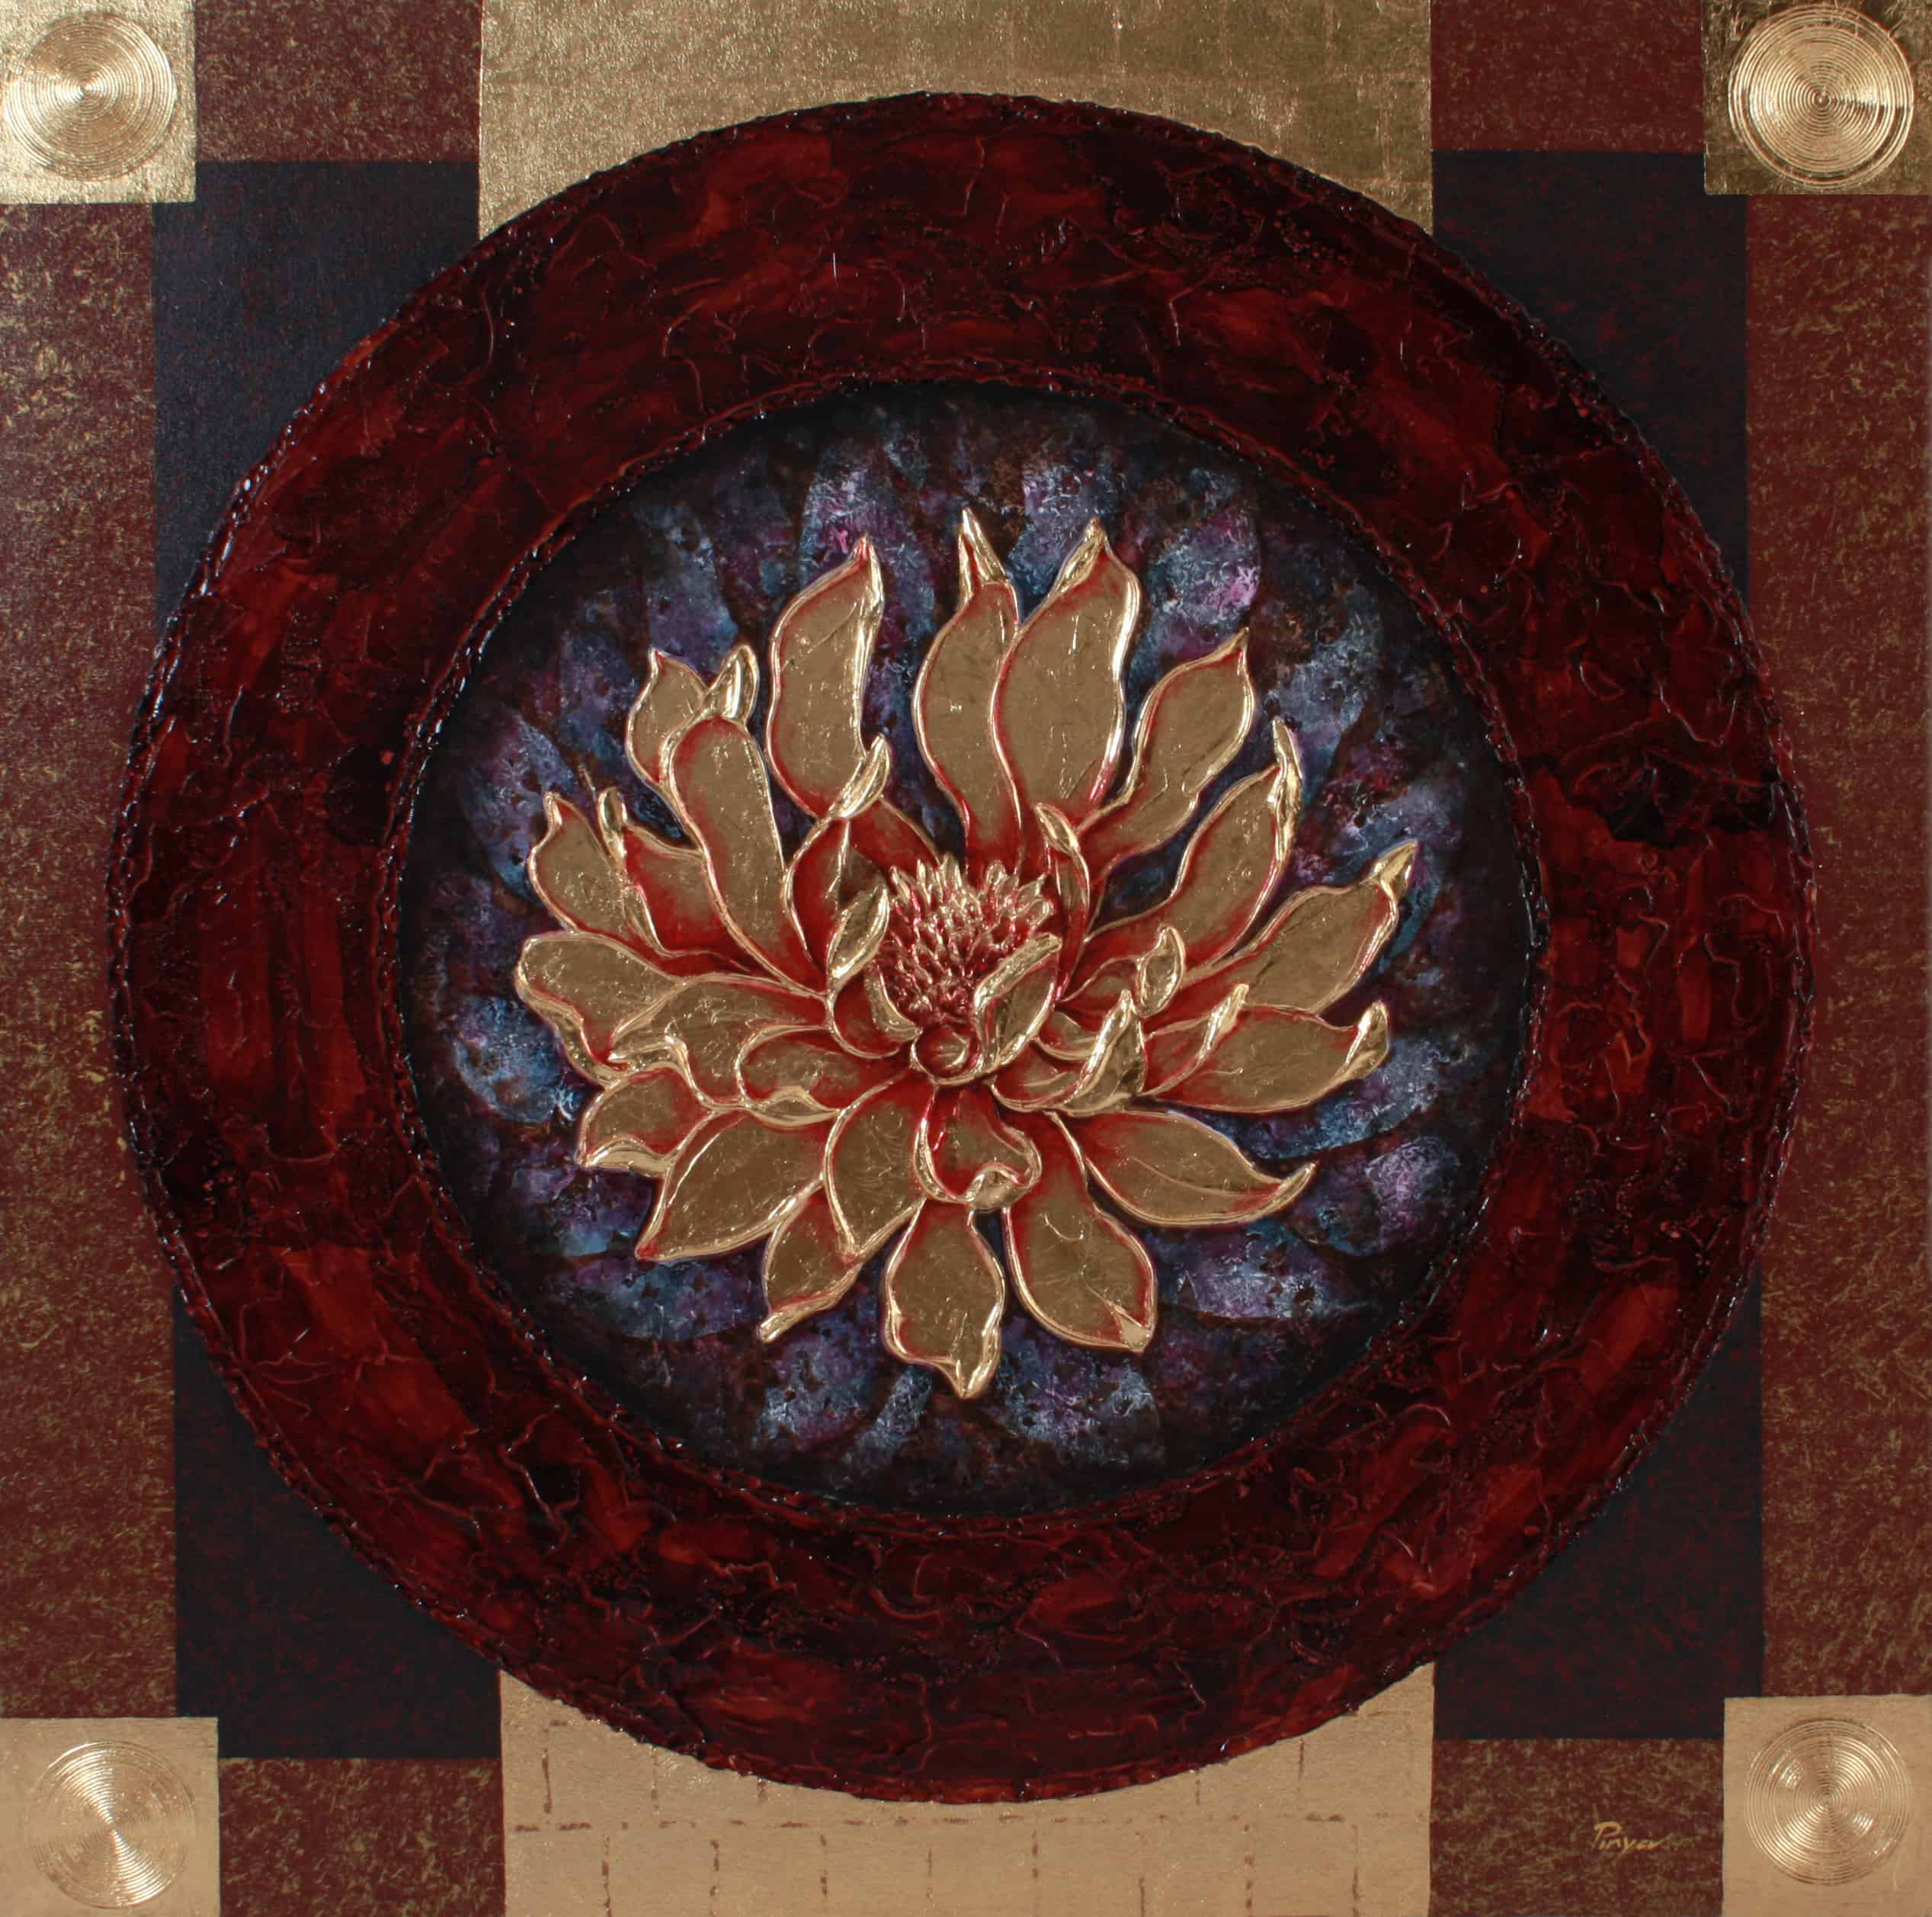 Pinya - Flowers Painting Lotus - 18 - 12Pinya - Flowers Painting Lotus - 18 - 12